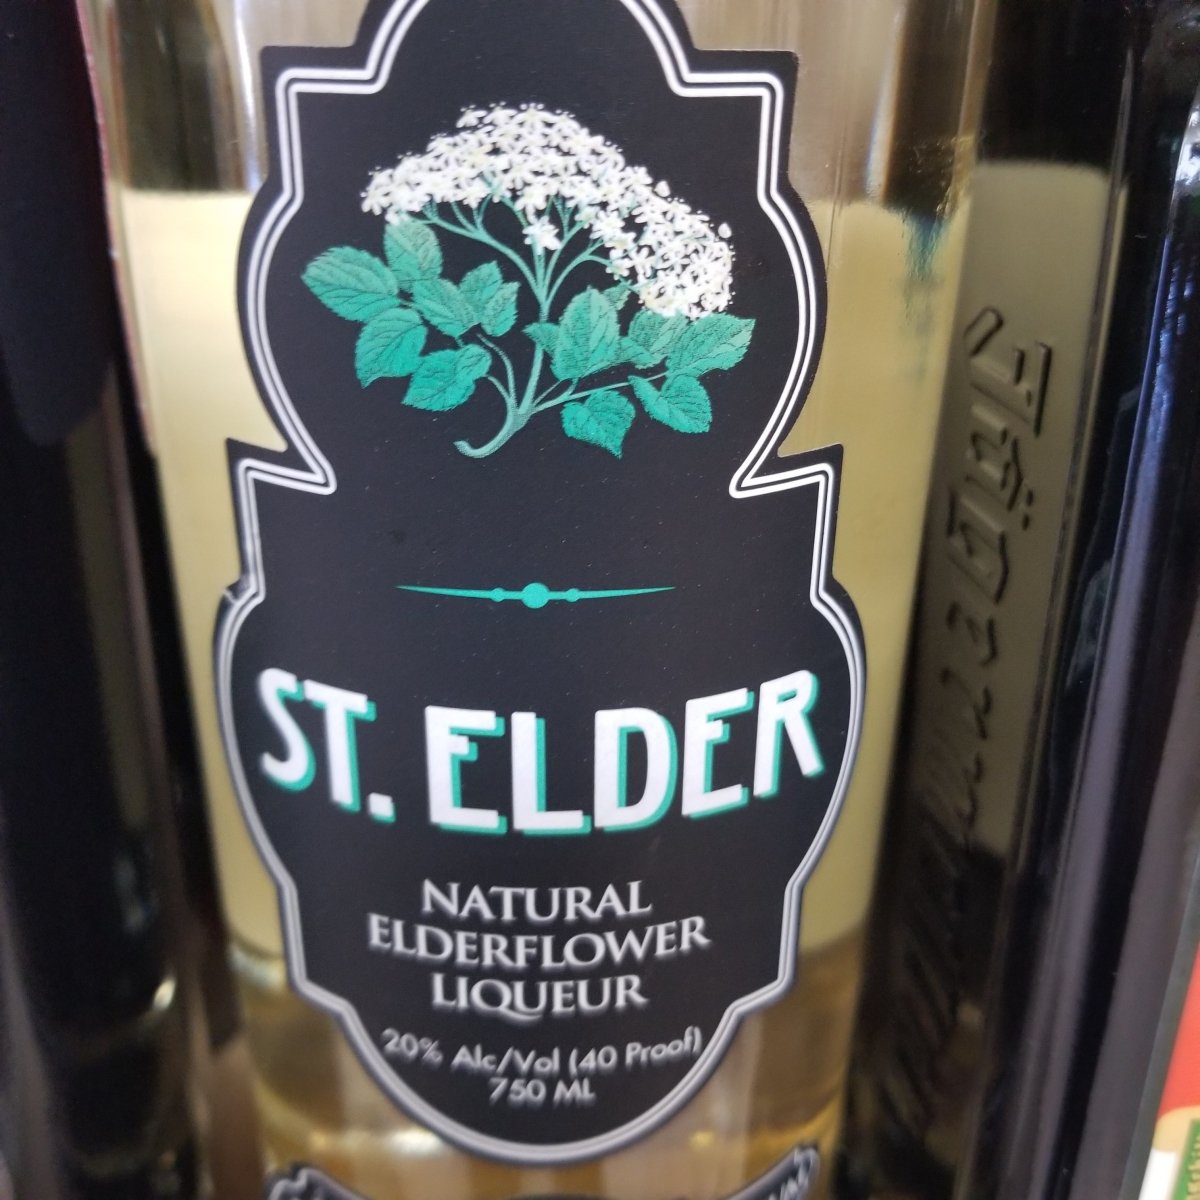 St. Elder Natural Elderflower Liqueur - 750 ml bottle